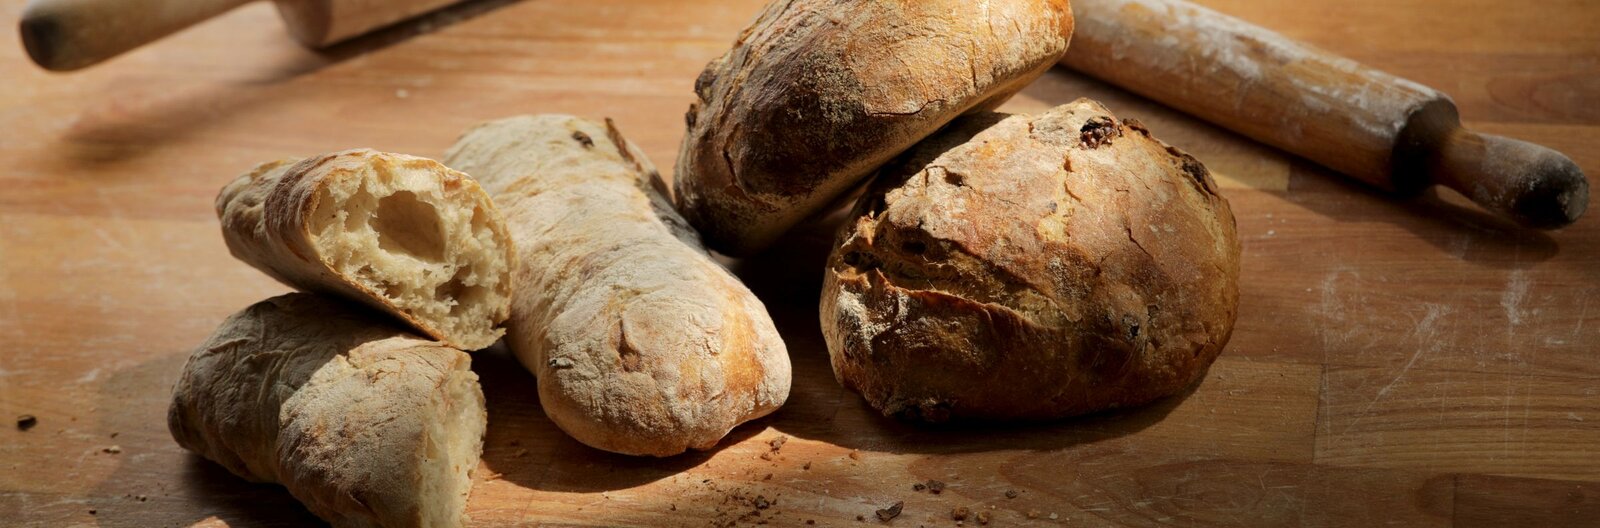 „De úgy kell a boldogság, mint egy falat kenyér” – a város legjobb pékjeinek kedvenc kenyerei, péksüteményei